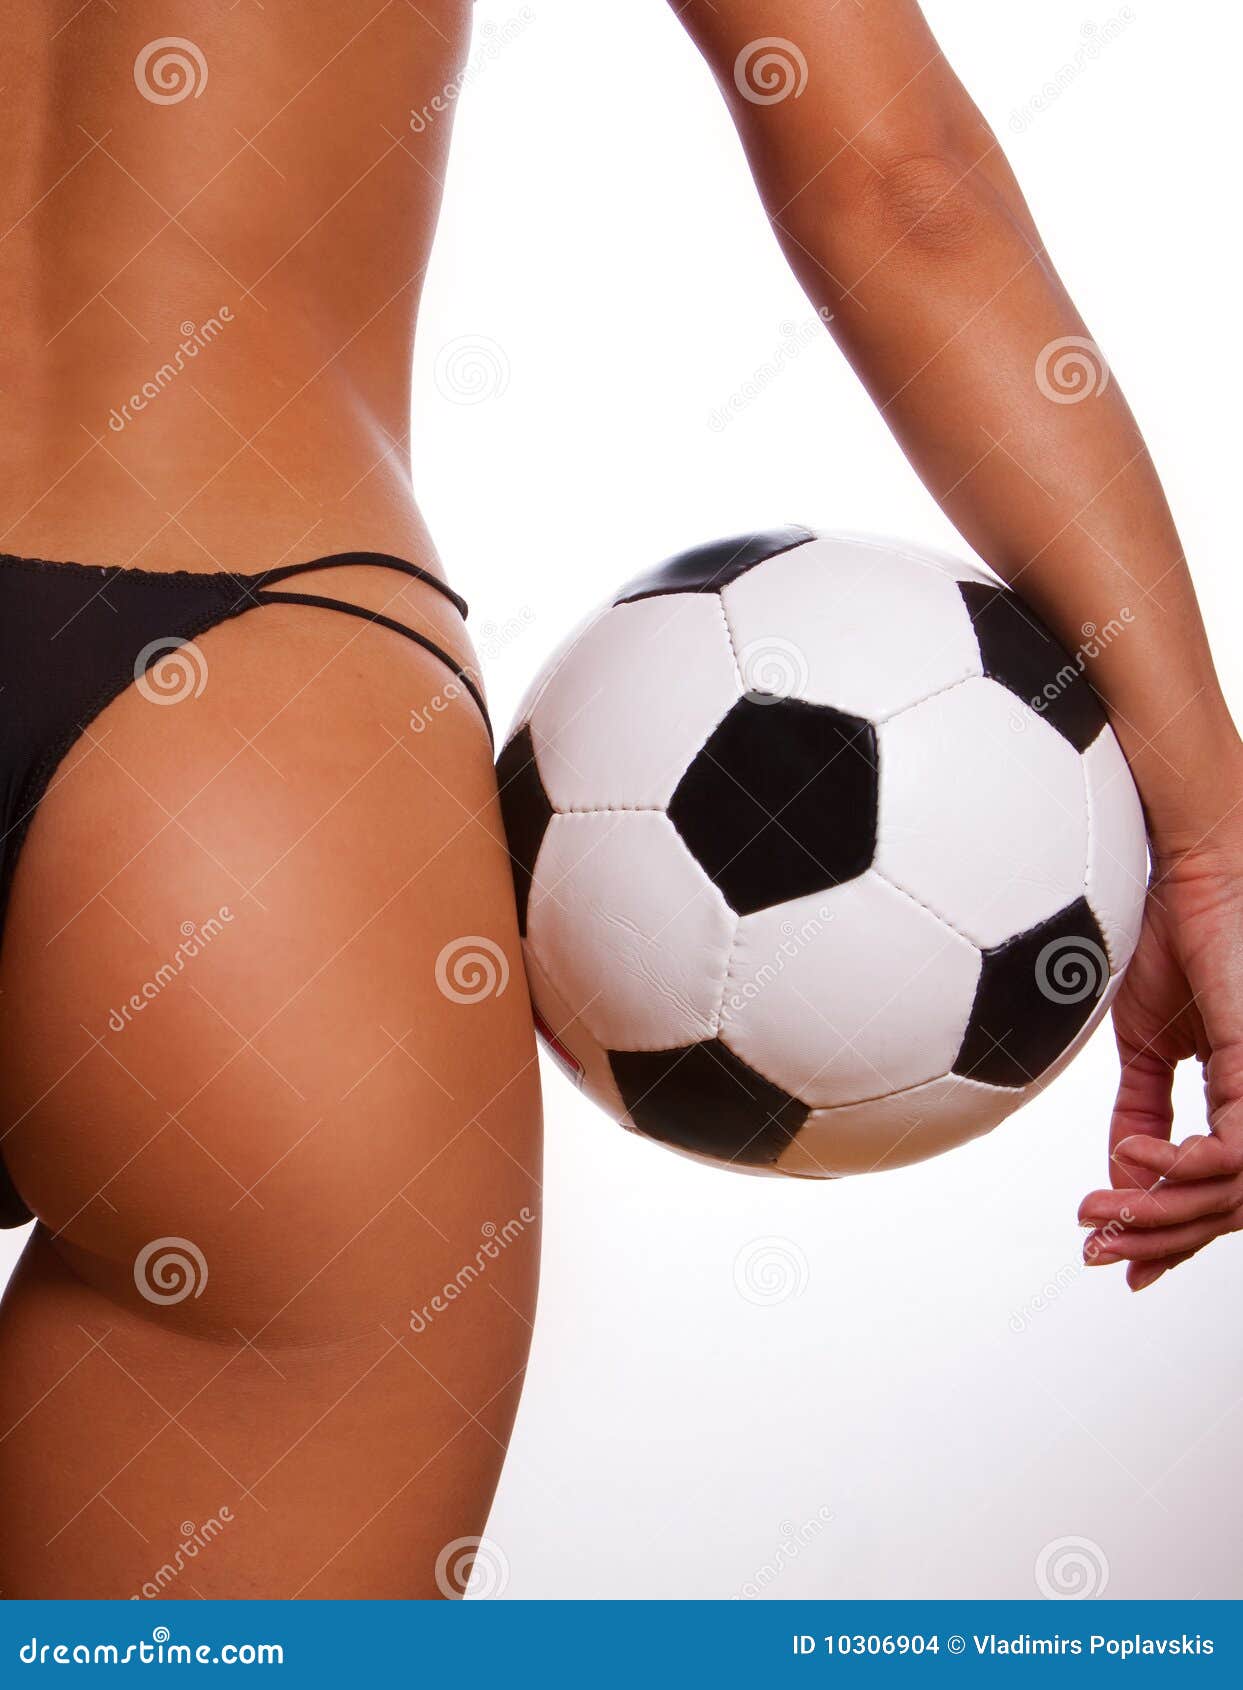 Best of Female naked soccer